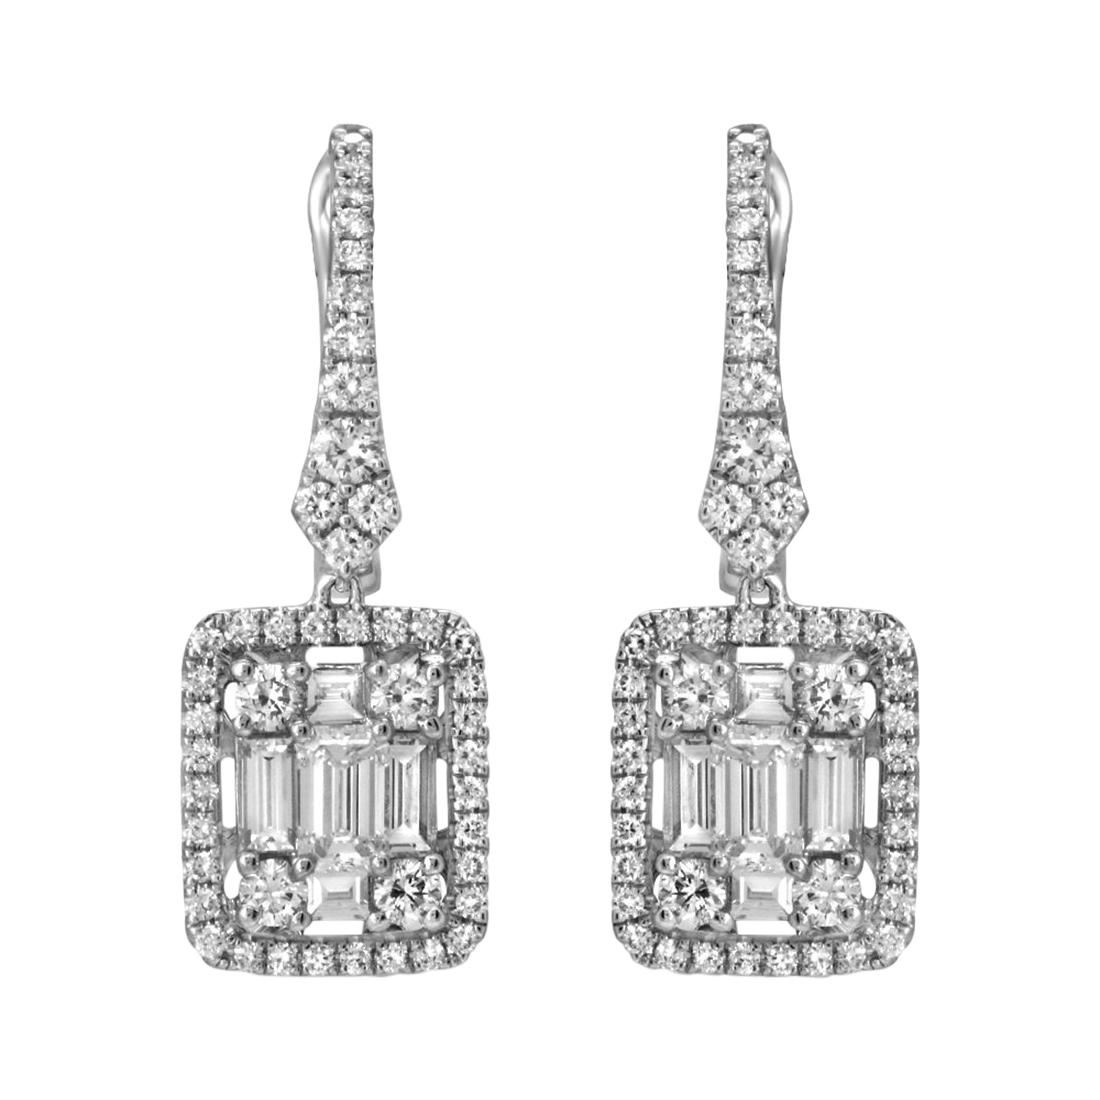 Boucles d'oreilles pendantes en or blanc 18 carats avec diamants naturels de 1,77 carat